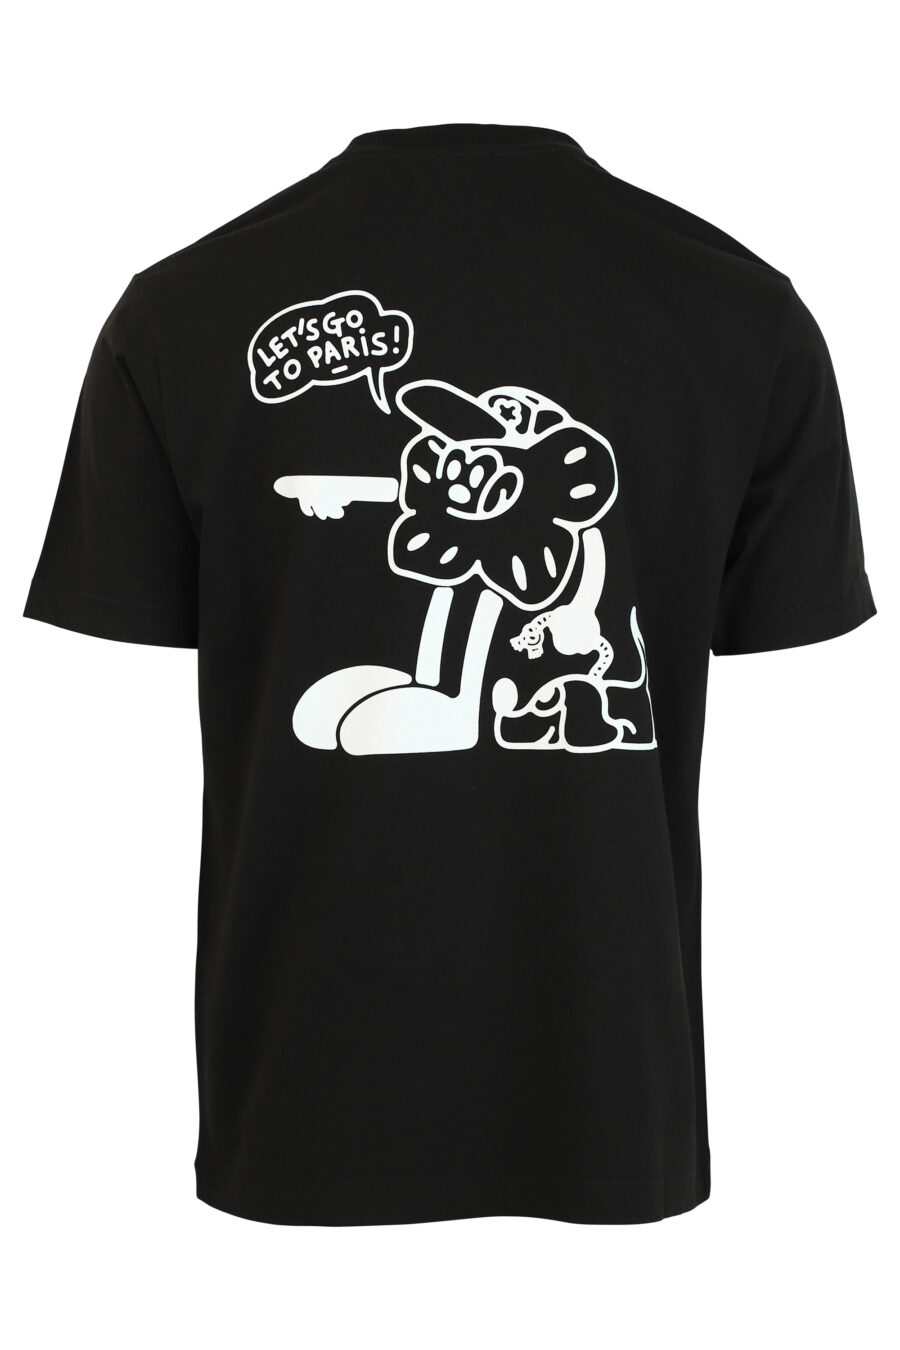 Schwarzes T-Shirt mit Aufdruck "boke boy travels" - 3612230465268 2